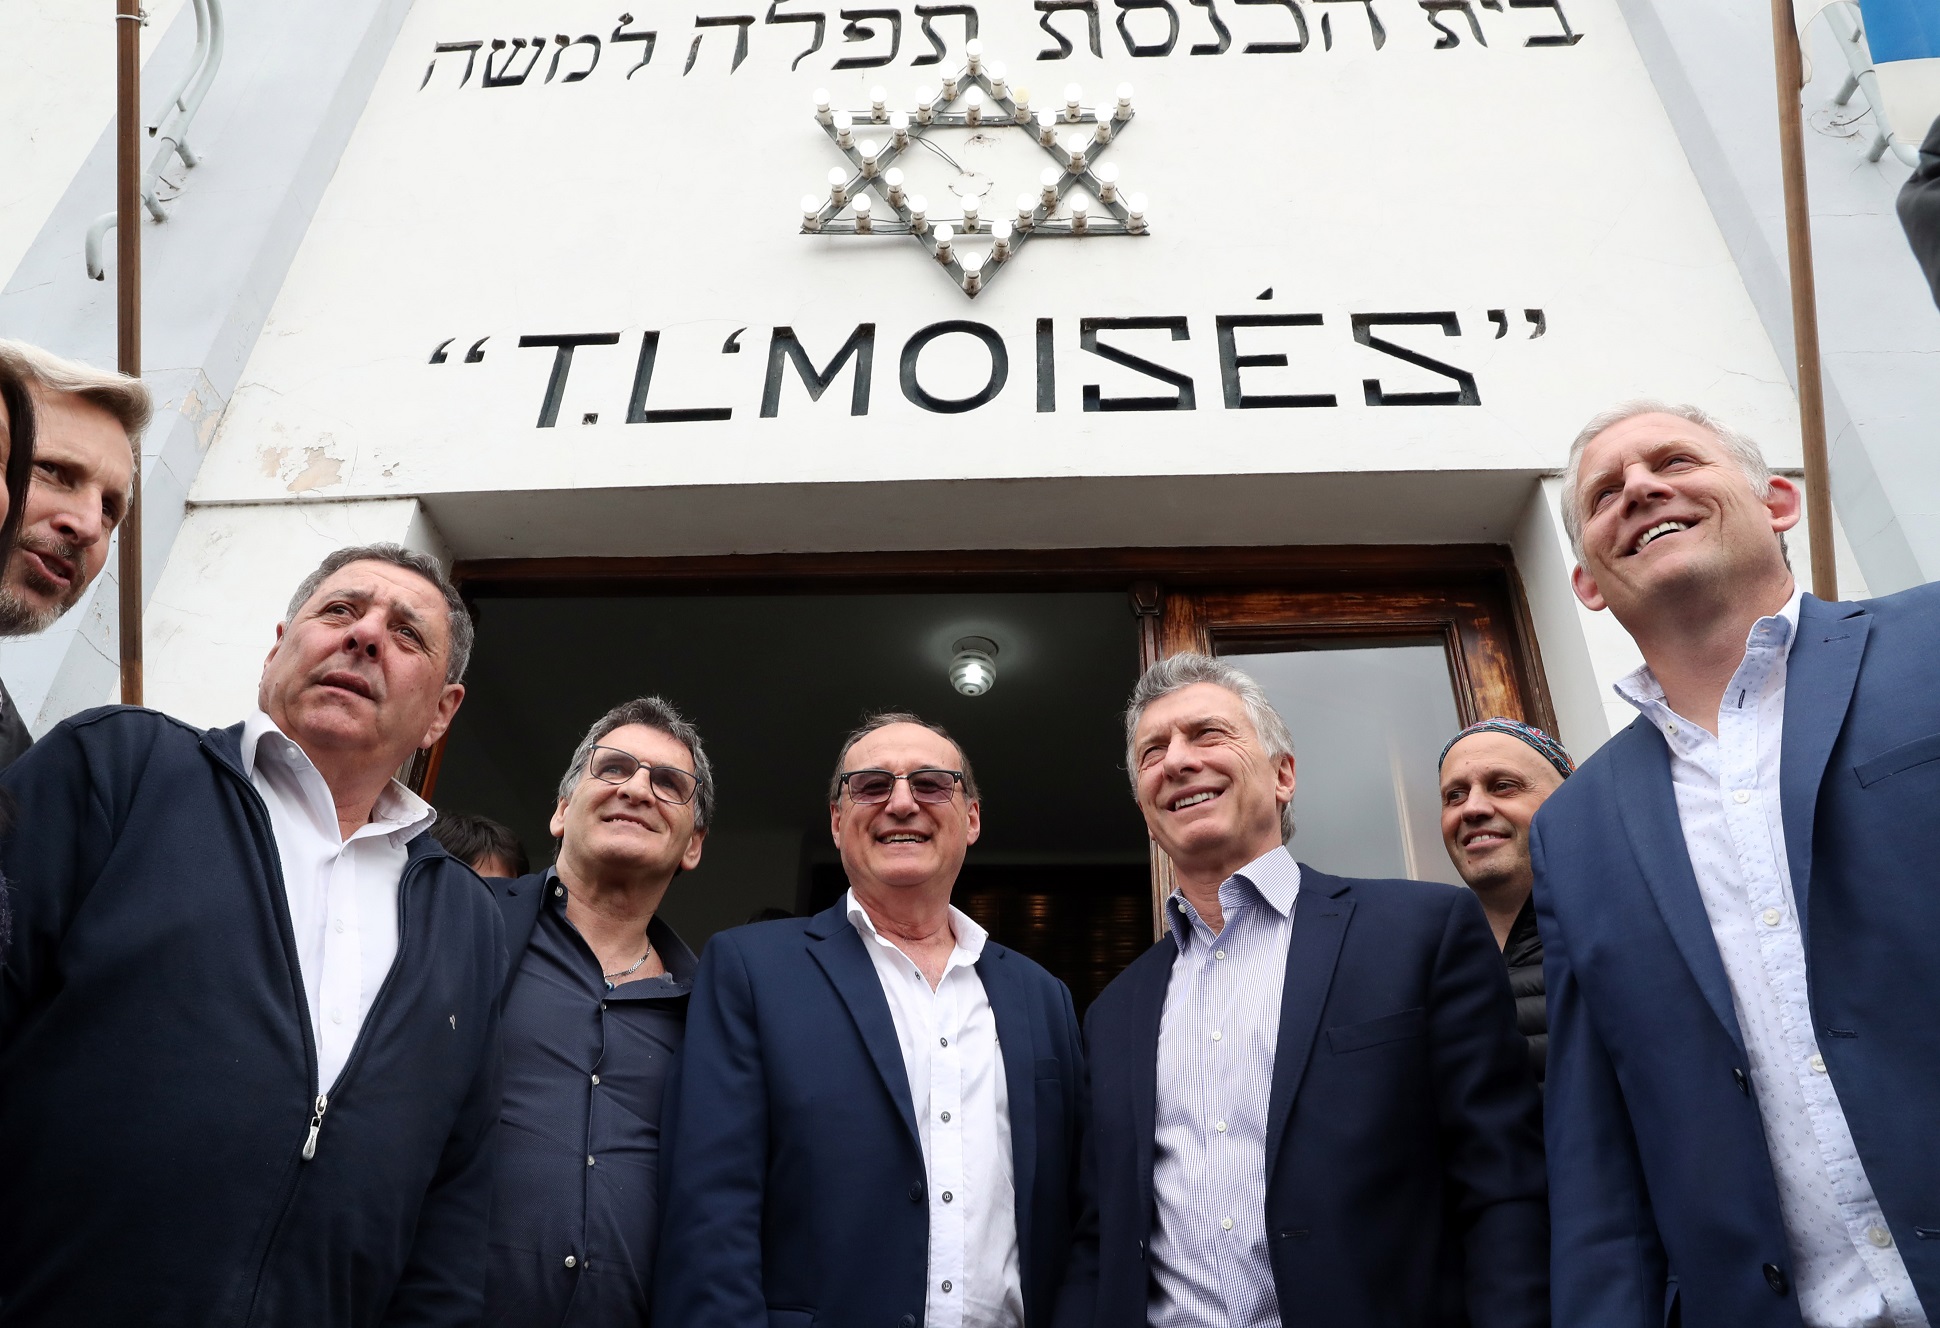 El presidente Macri mantuvo un encuentro con miembros de la comunidad judía en Entre Ríos   